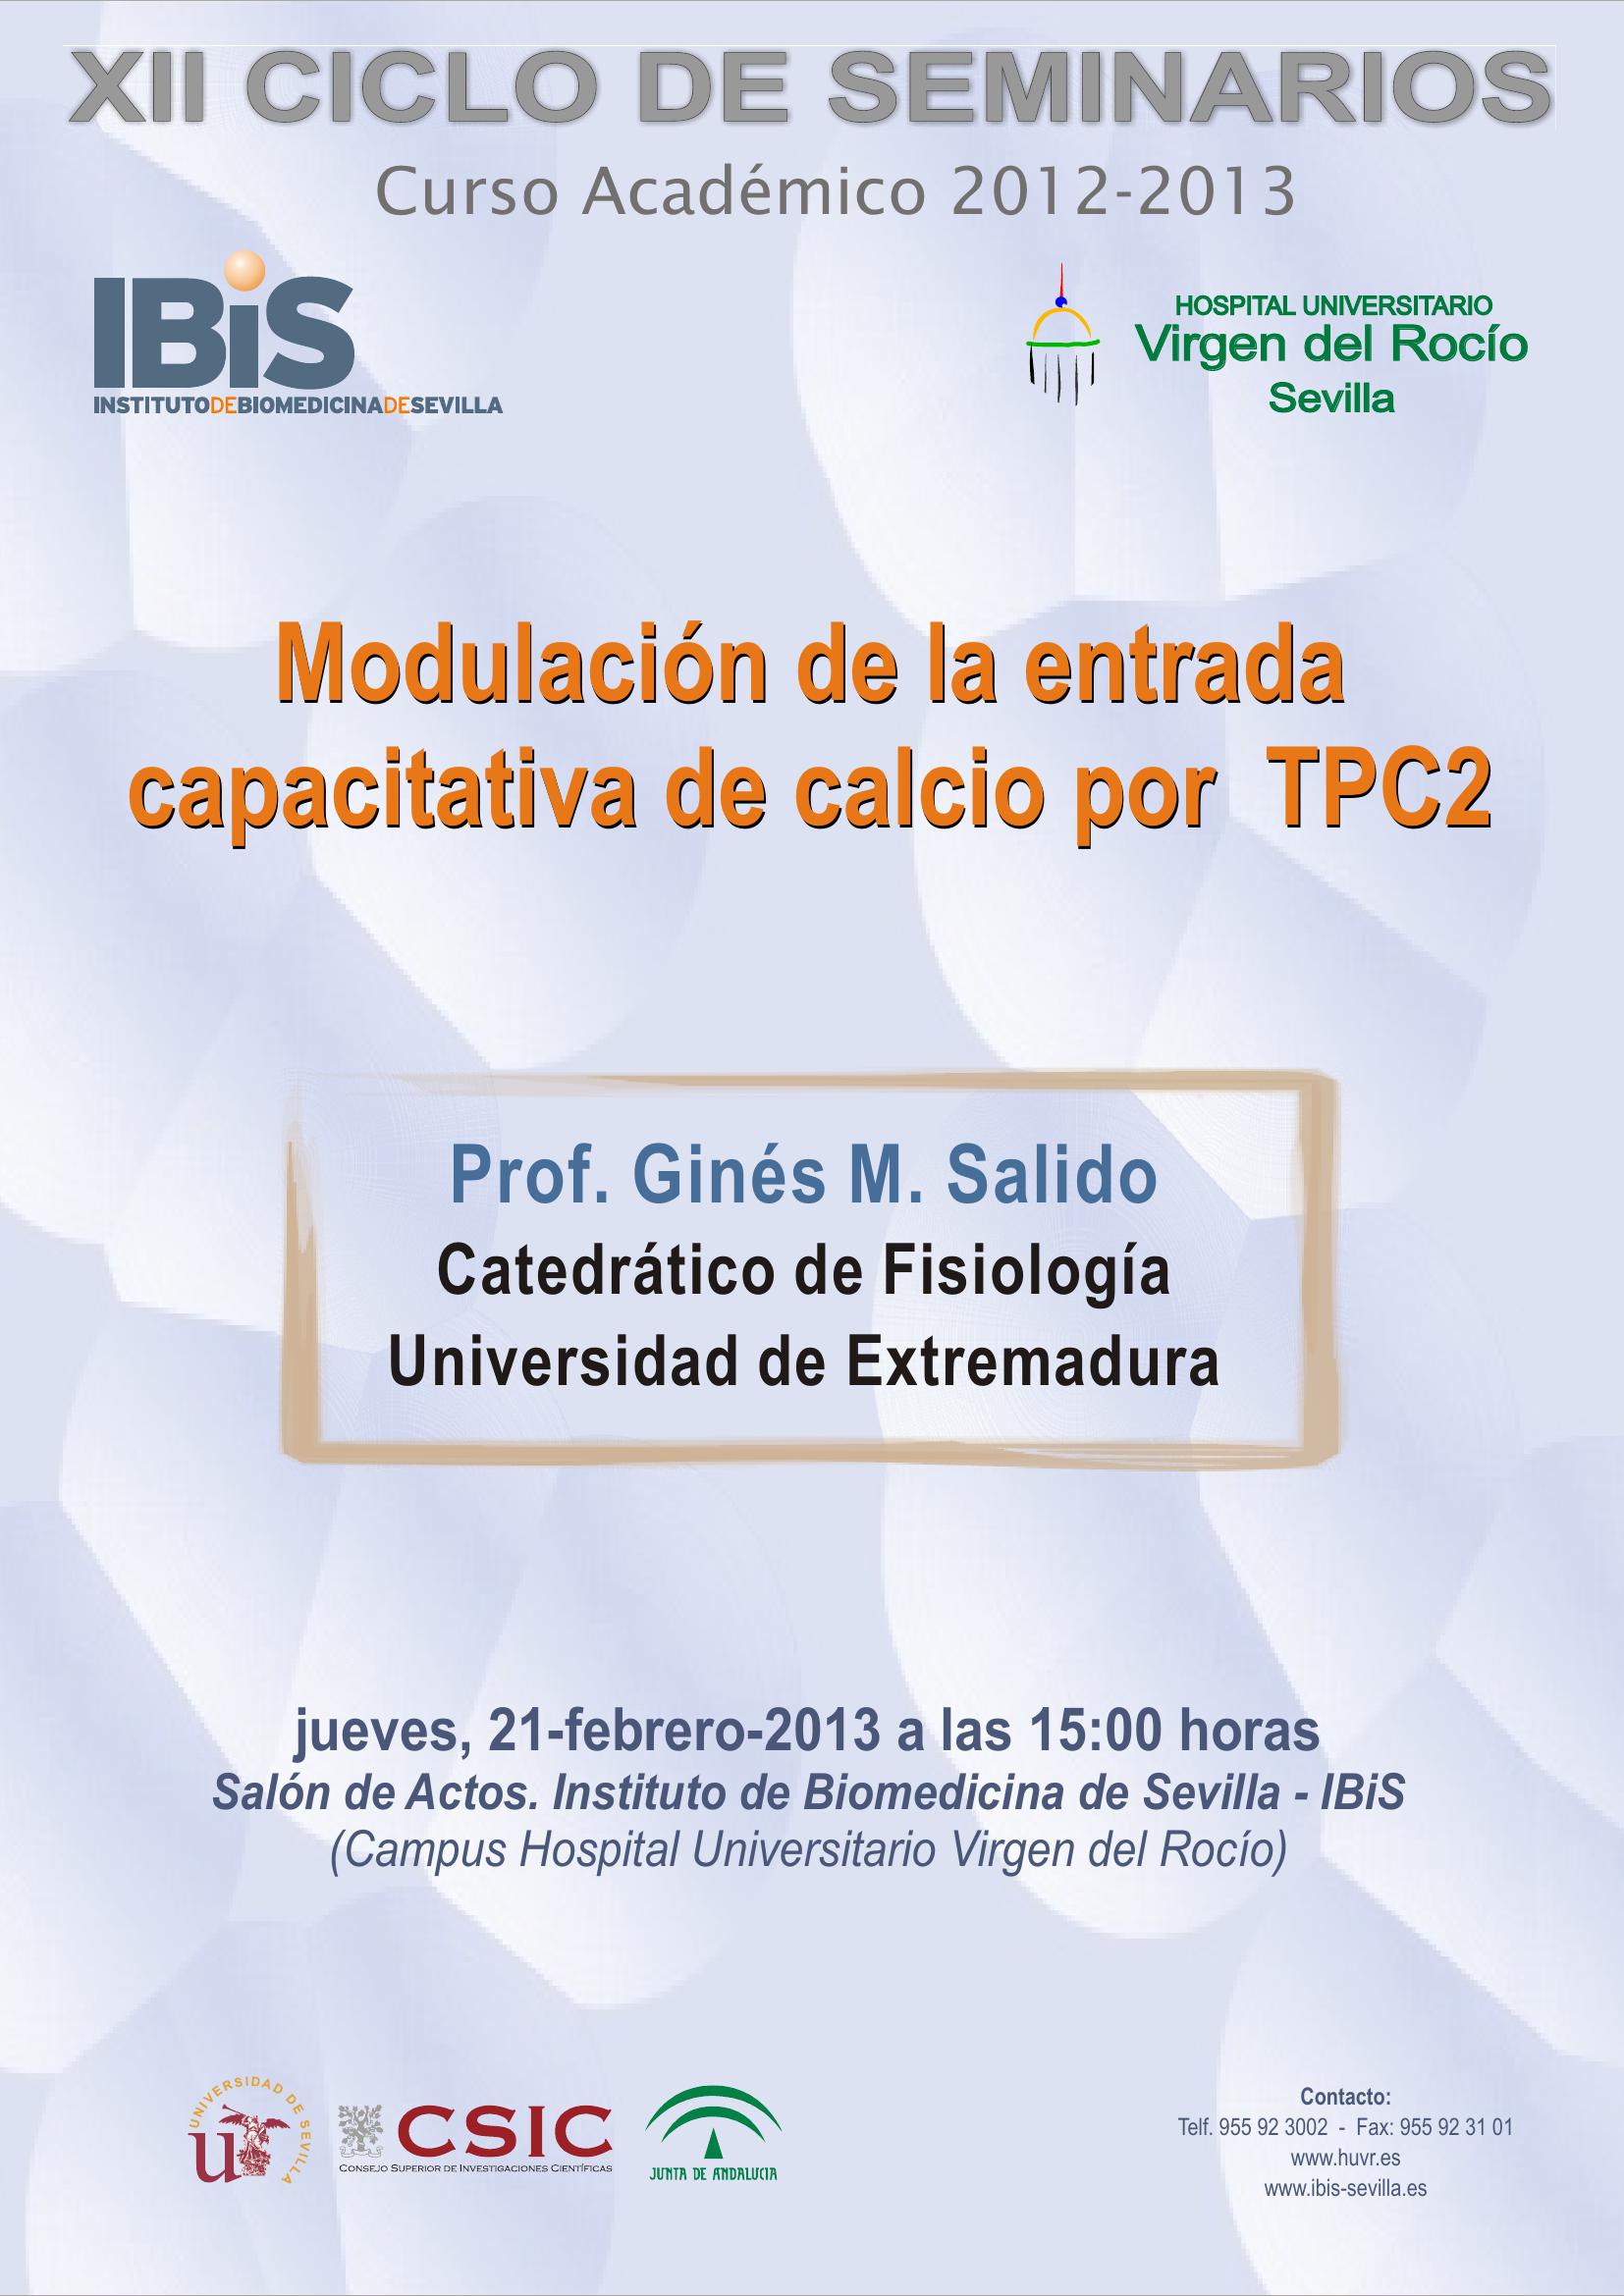 Poster: Modulación de la entrada capacitativa de calcio por TPC2.